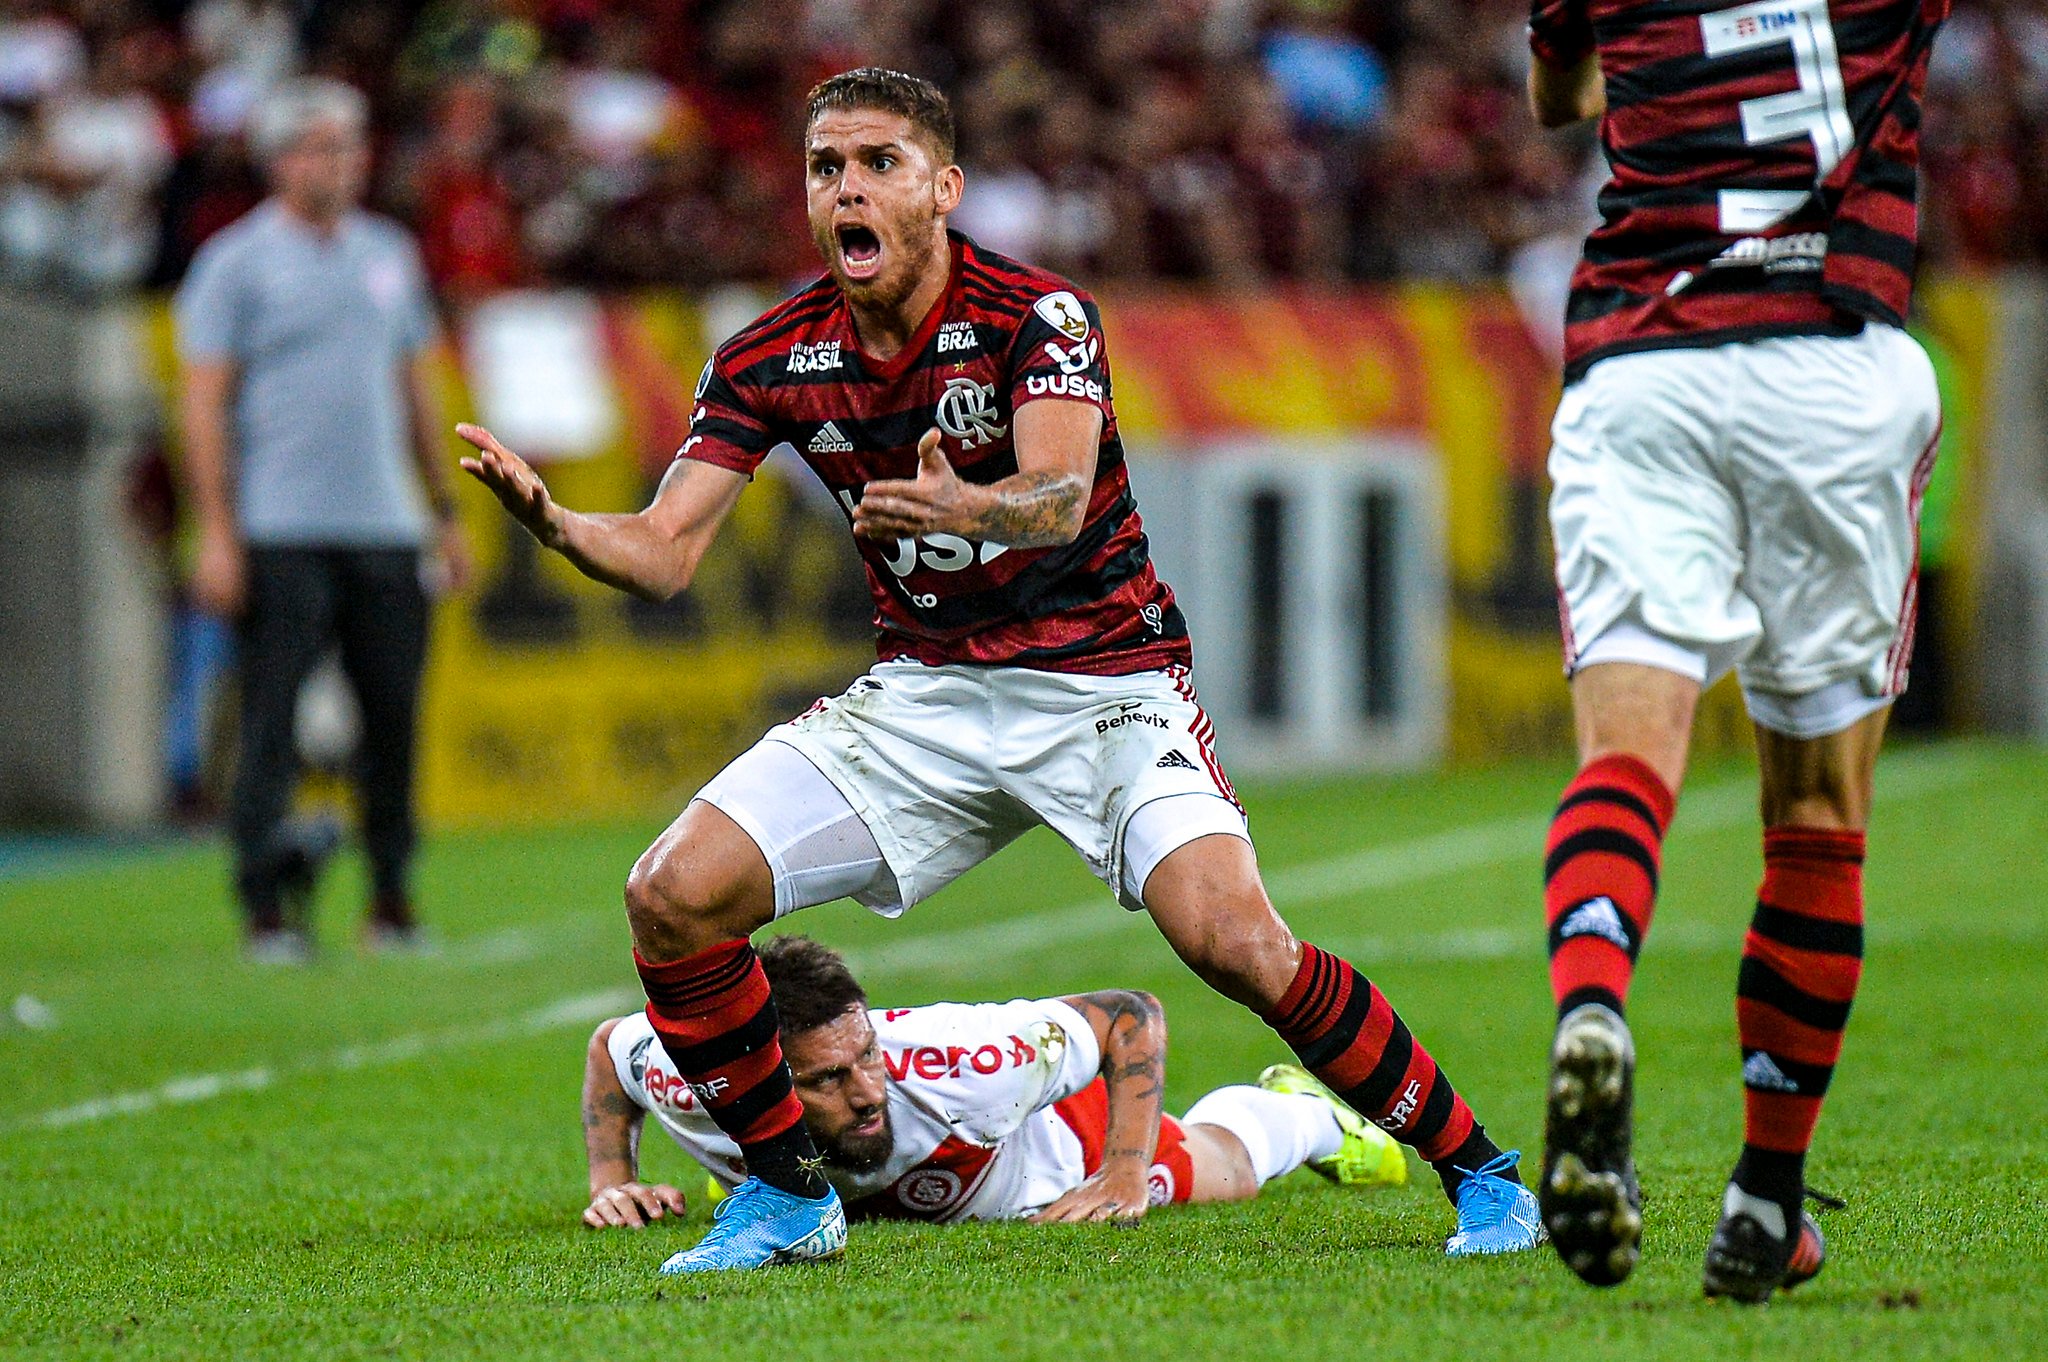 O volante Cuéllar saiu de forma polêmica do Flamengo, no ano passado, para acertar com o Al Hilal, da Arábia Saudita. O jogador foi acusado pelos torcedores de forçar a barra para deixar o clube da Gávea